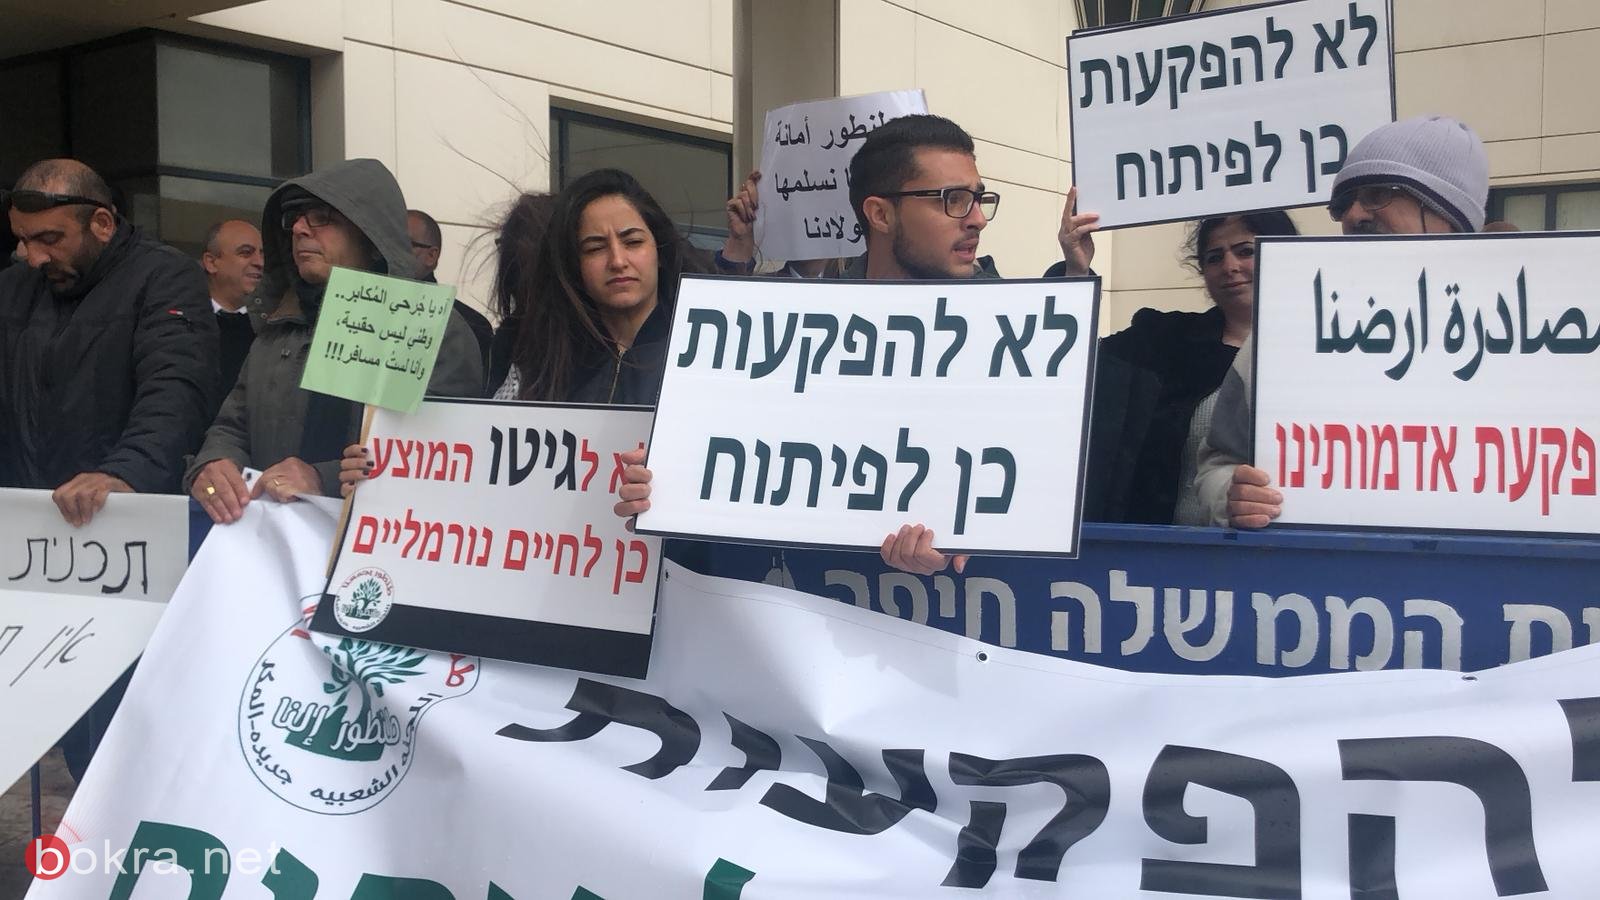 حيفا: اهالي الجديدة - المكر يتظاهرون قبالة وزارة الاسكان ضدّ مخطّط طنطور -5